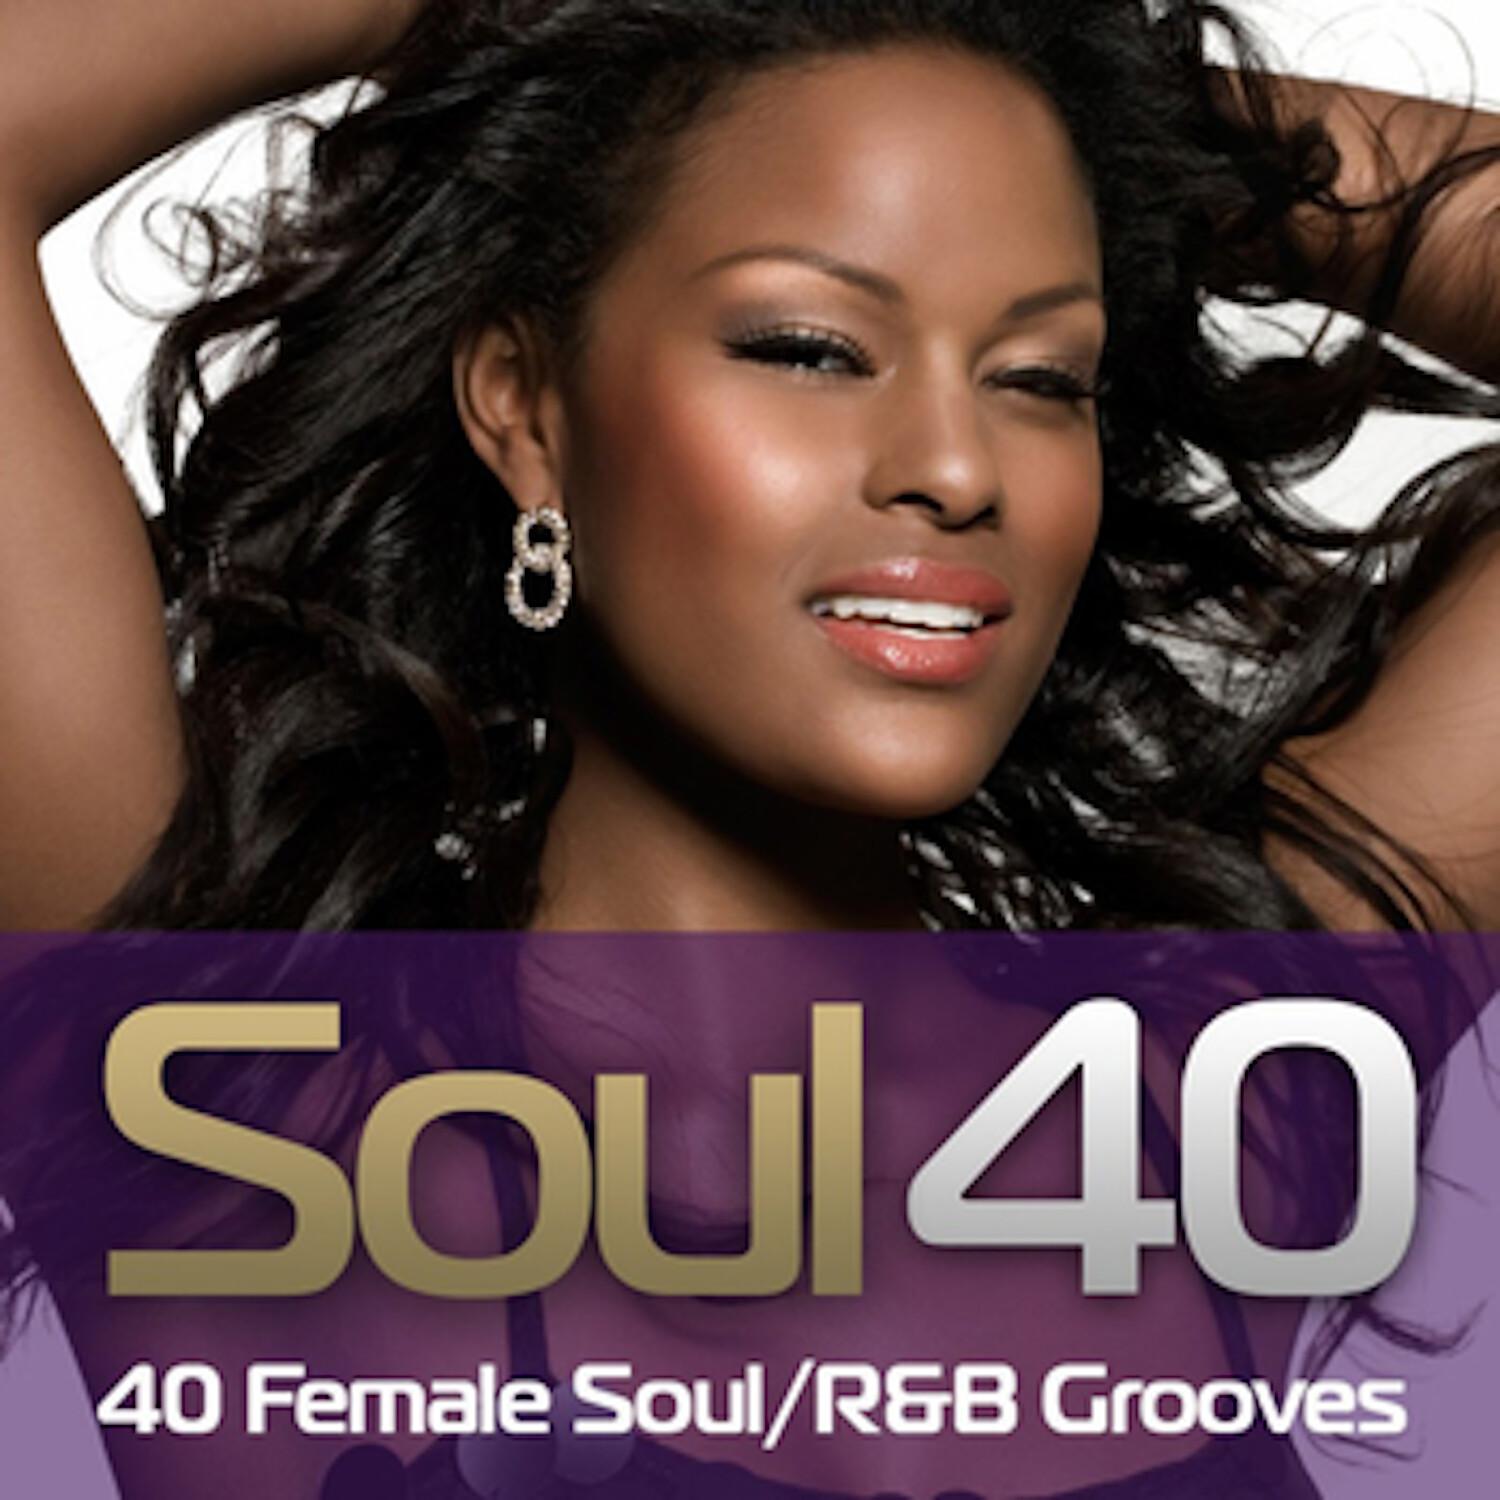 Soul 40 - 40 Female Soul/R&B Grooves